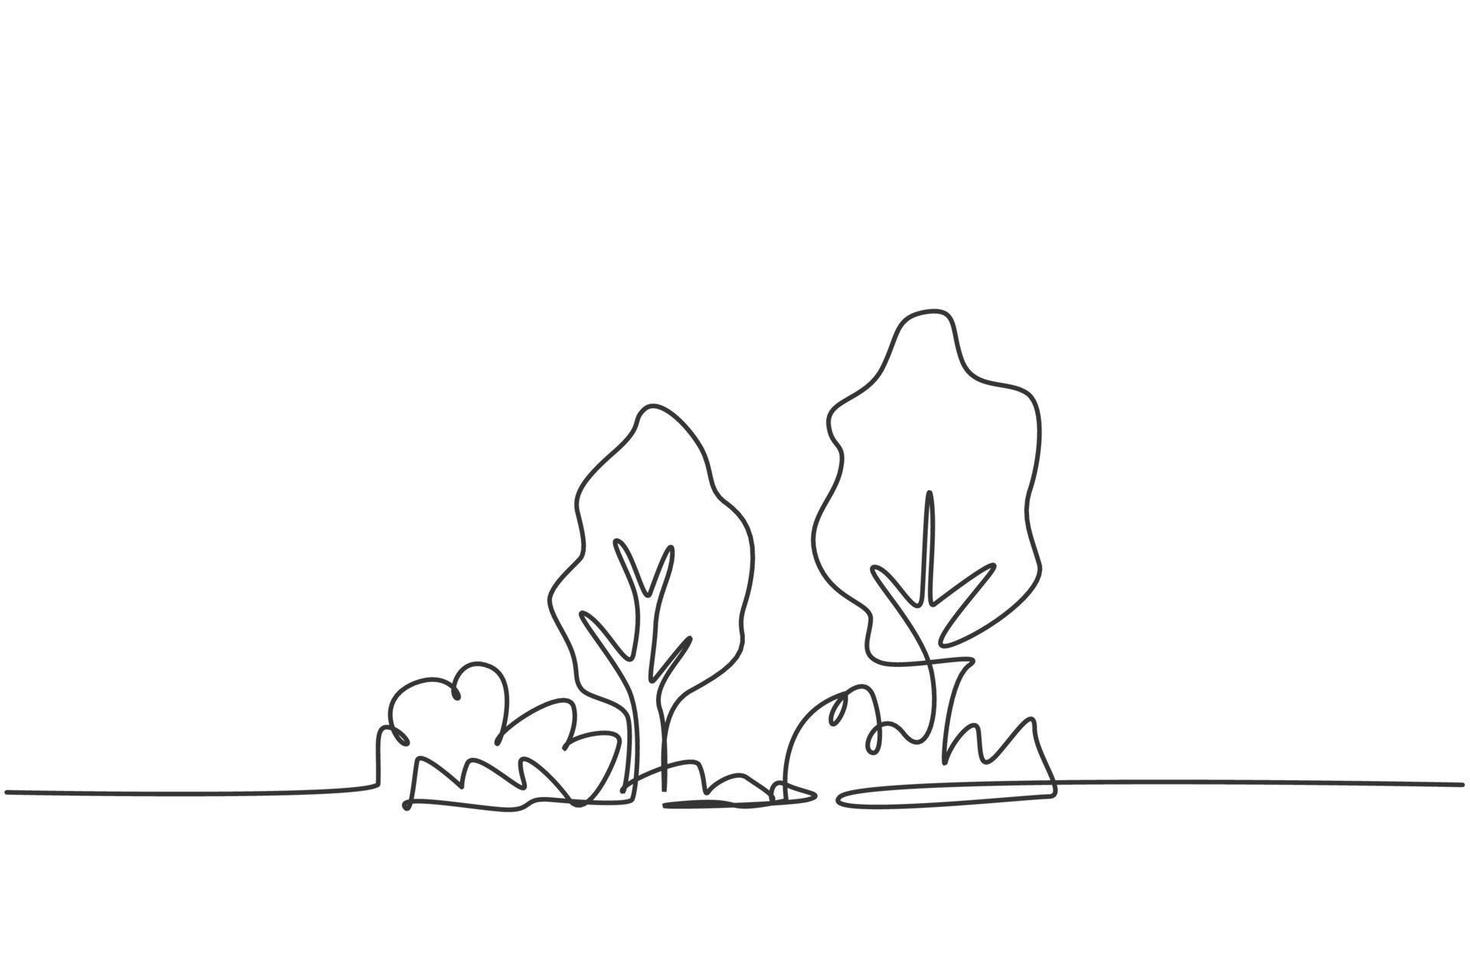 dibujo continuo de una línea de árbol verde ecológico con arbusto para el icono de jardín. logotipo del parque de ecología natural dibujado a mano concepto minimalista. Ilustración gráfica de vector de diseño de dibujo de una sola línea moderna